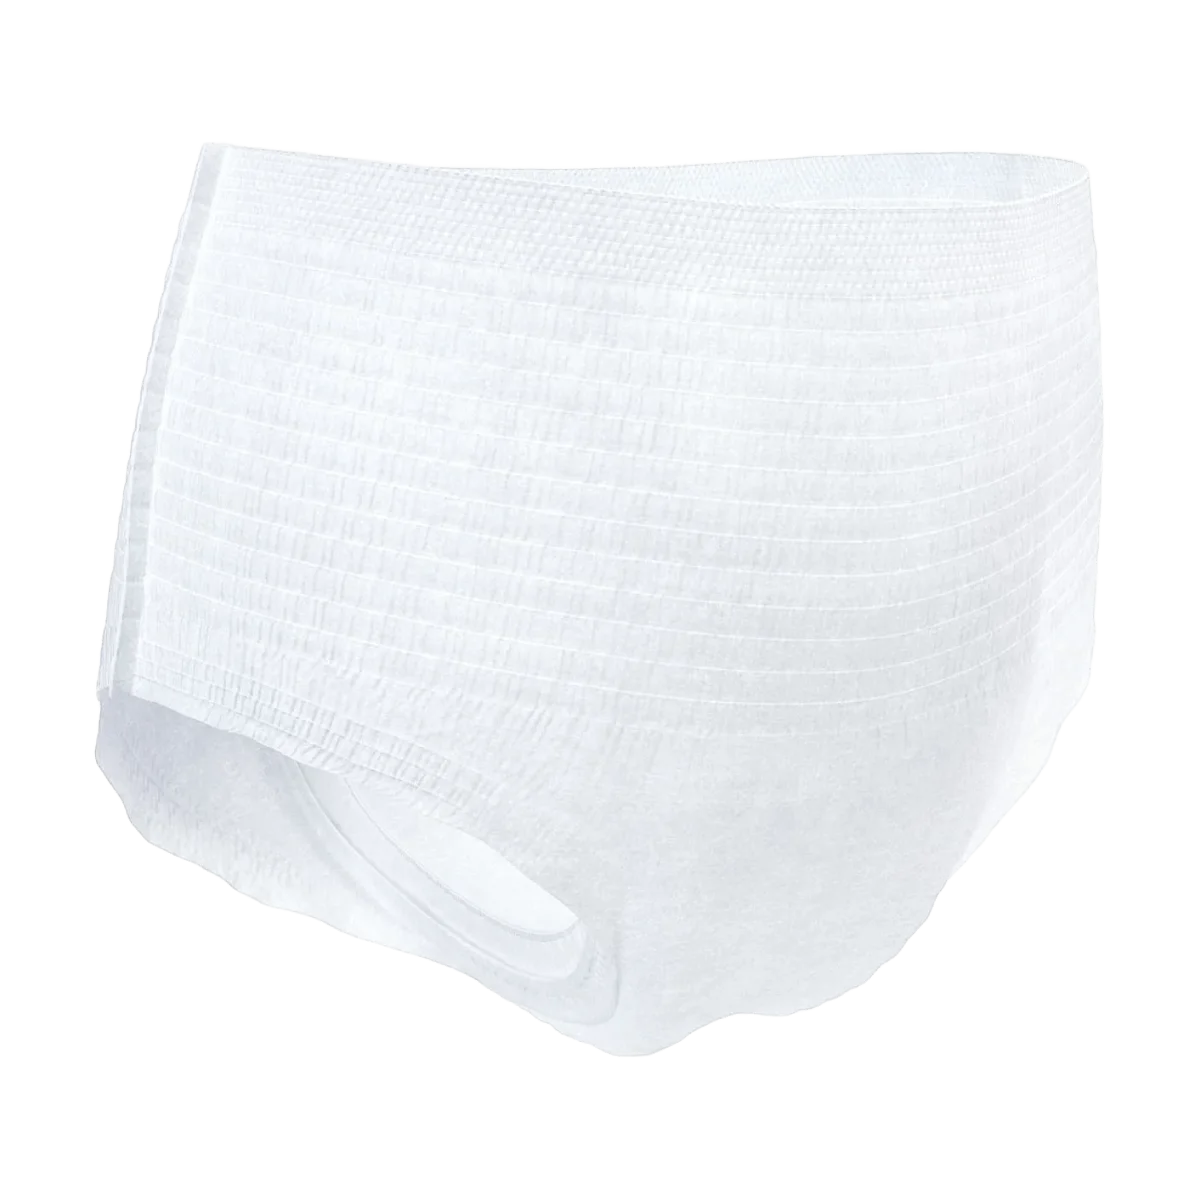 TENA Pants Plus Inkontinenz Gr. L, 8 Stk